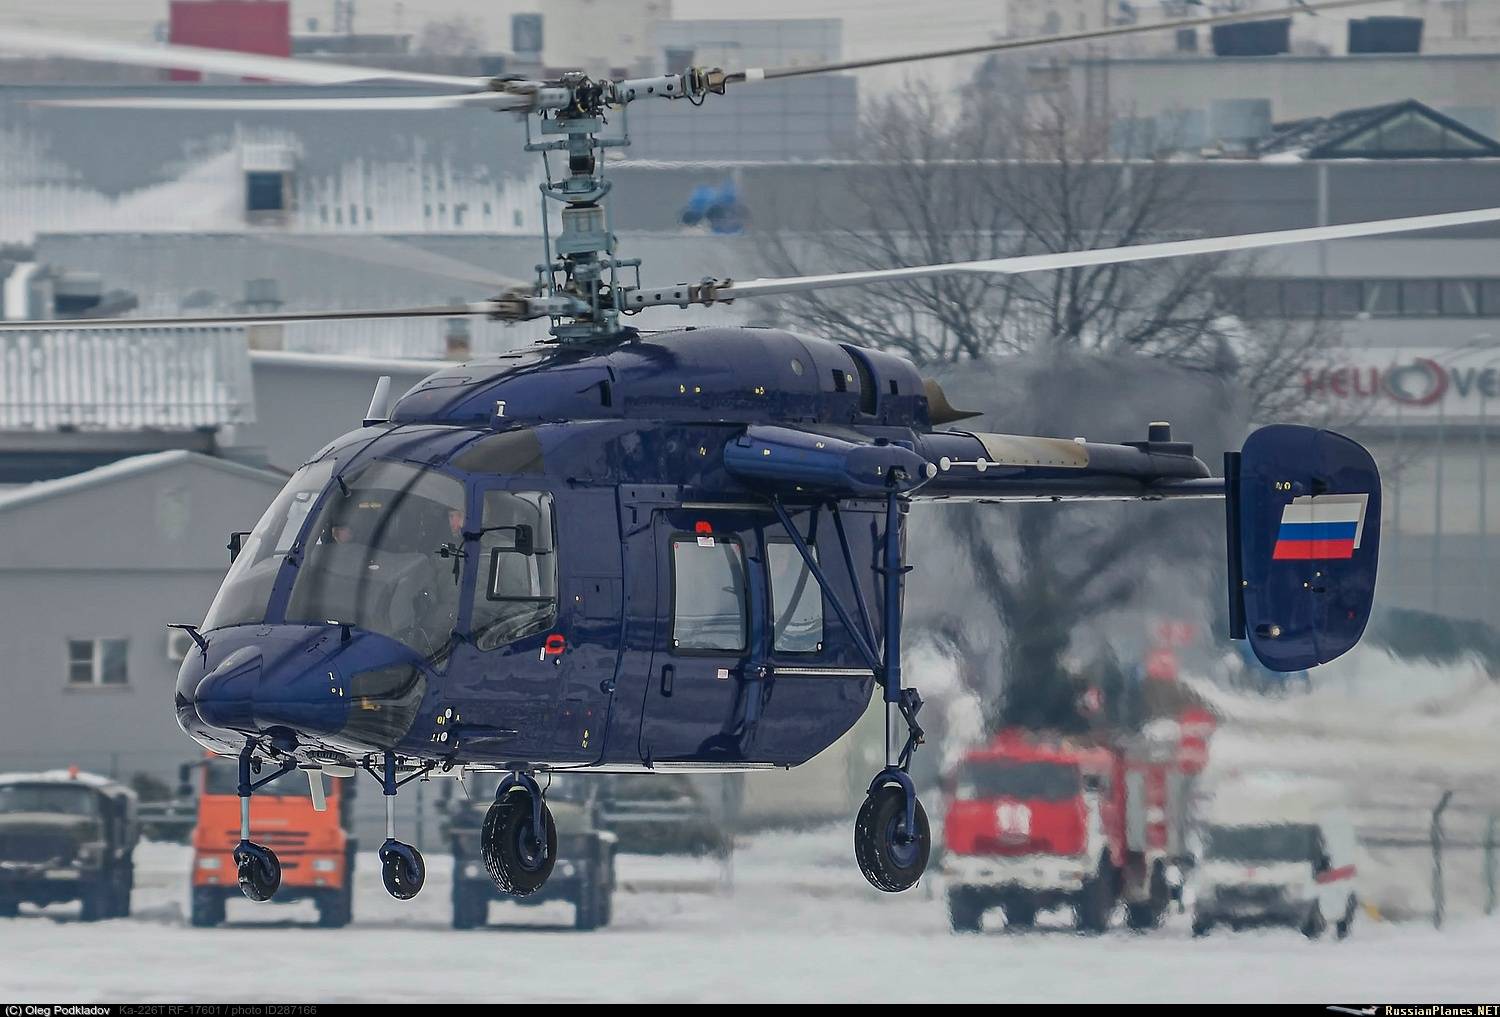 Многоцелевой вертолет ка-226 (россия). фото и описание